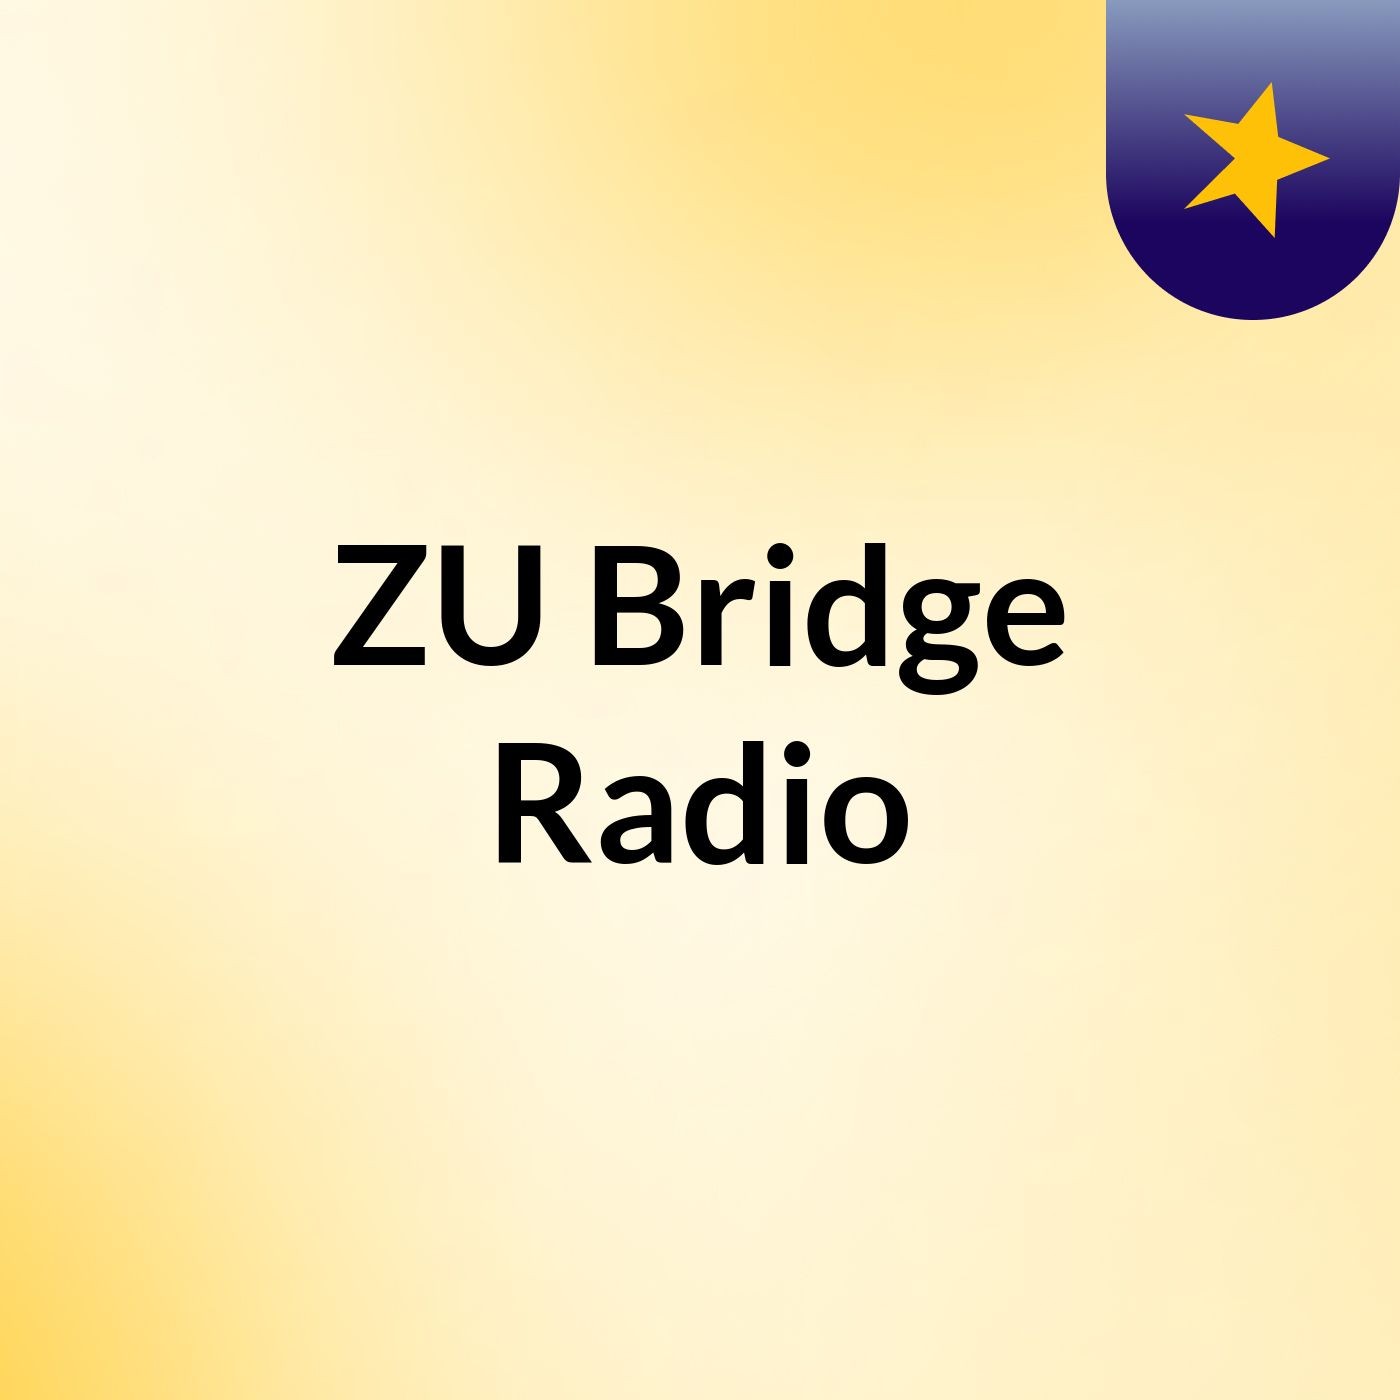 ZU Bridge Radio